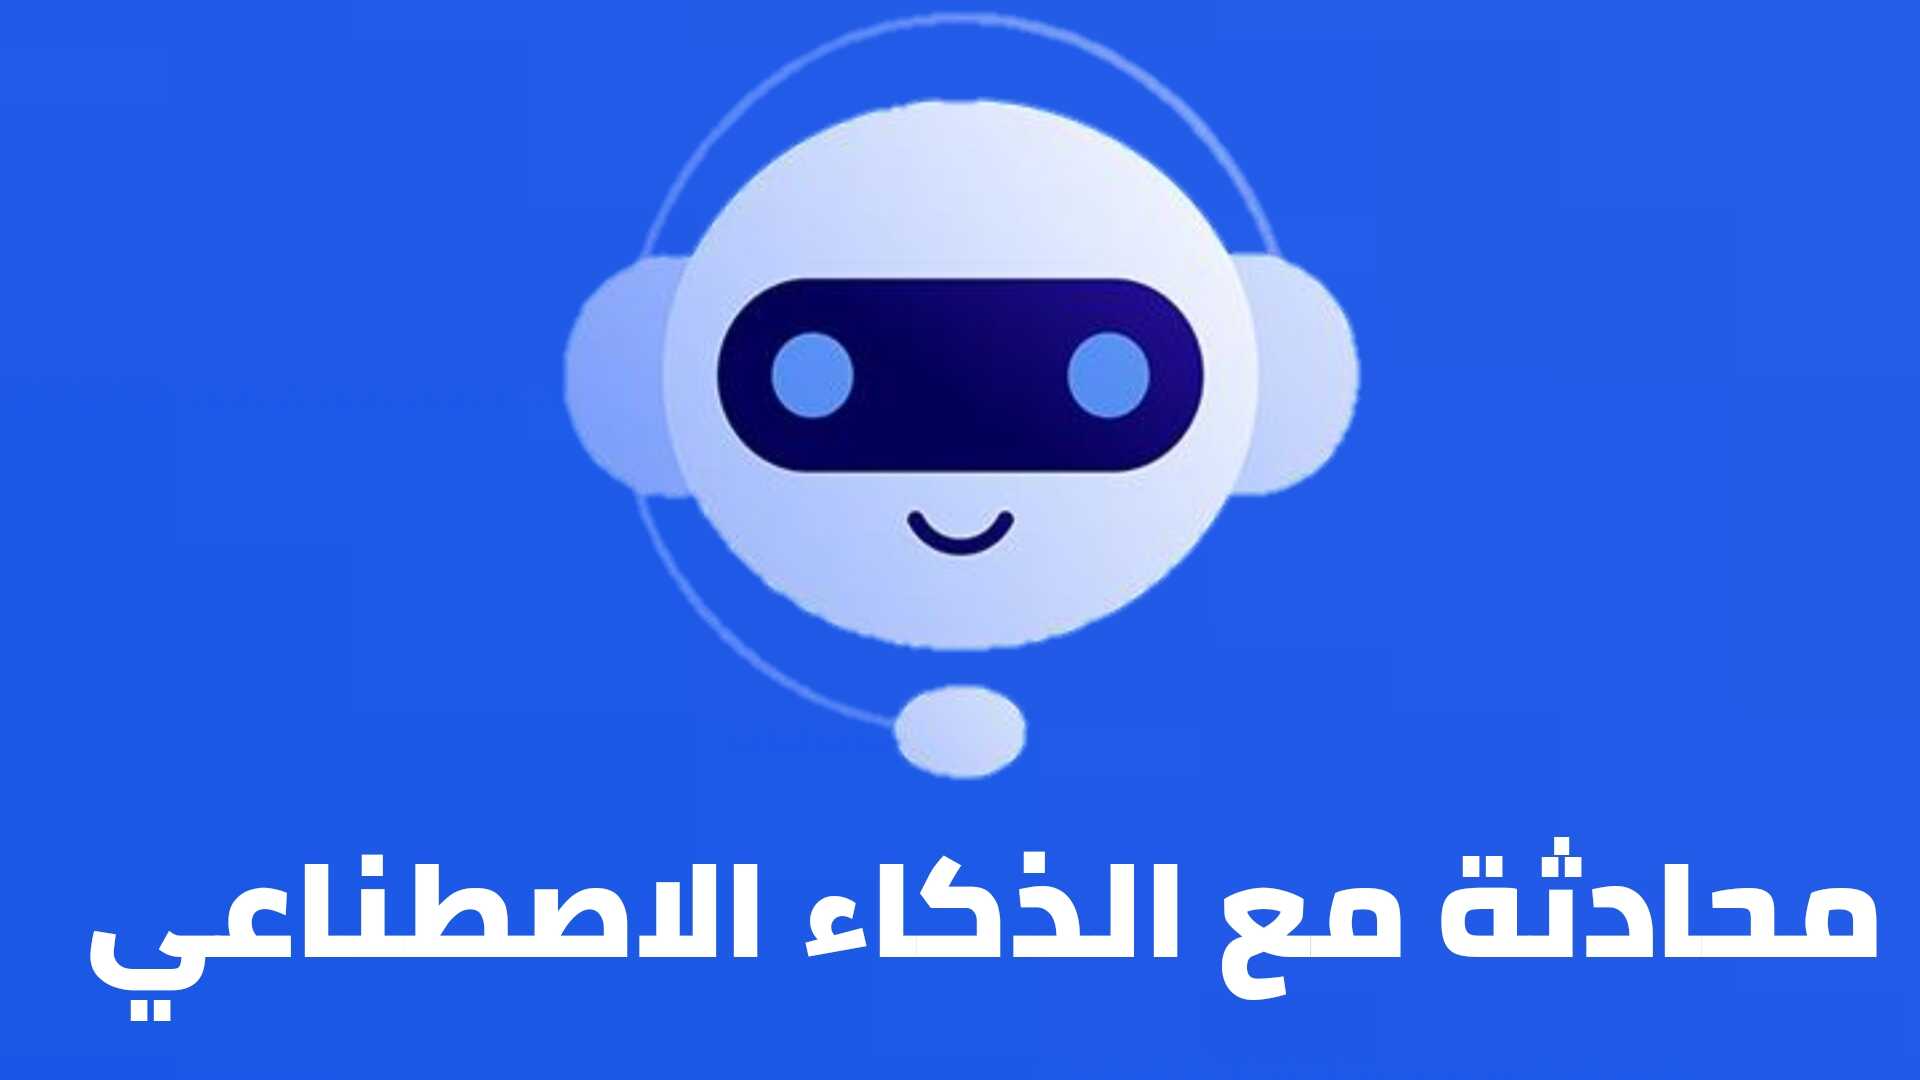 محادثة مع الذكاء الاصطناعي مجانا وباللغة العربية